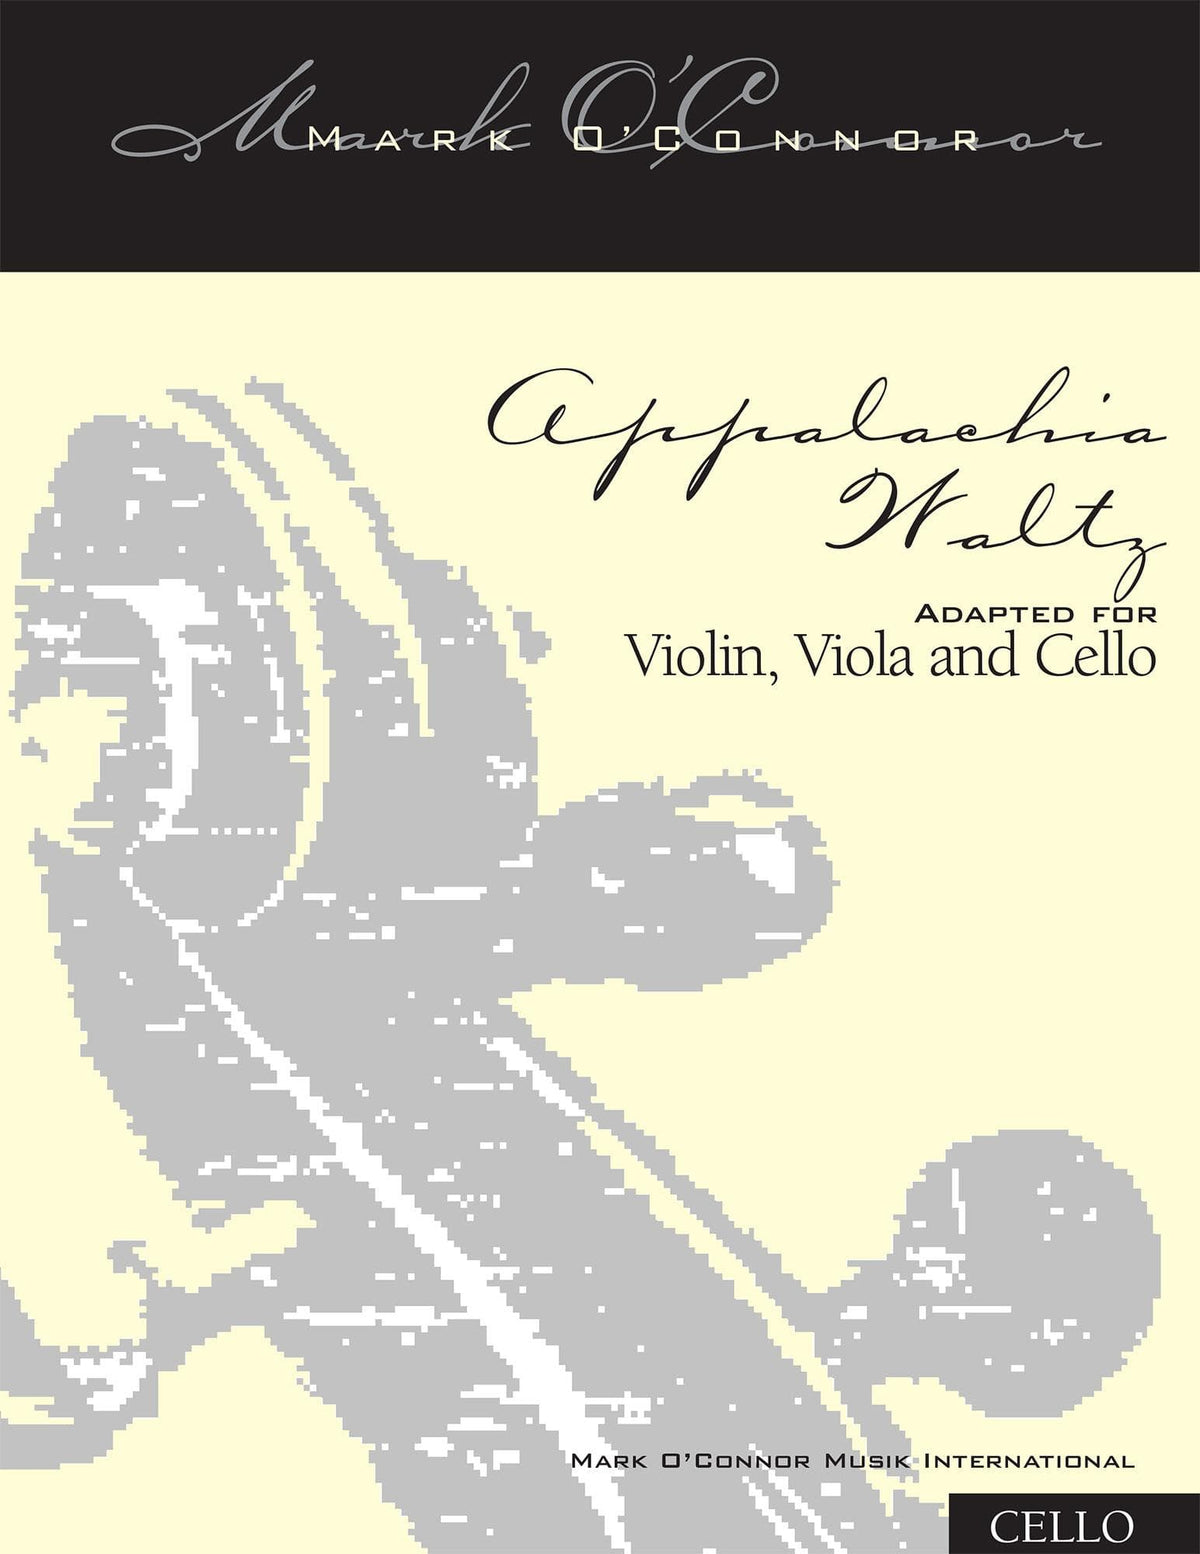 O'Connor, Mark - Appalachia Waltz for Violin, Viola, and Cello - Cello - Digital Download